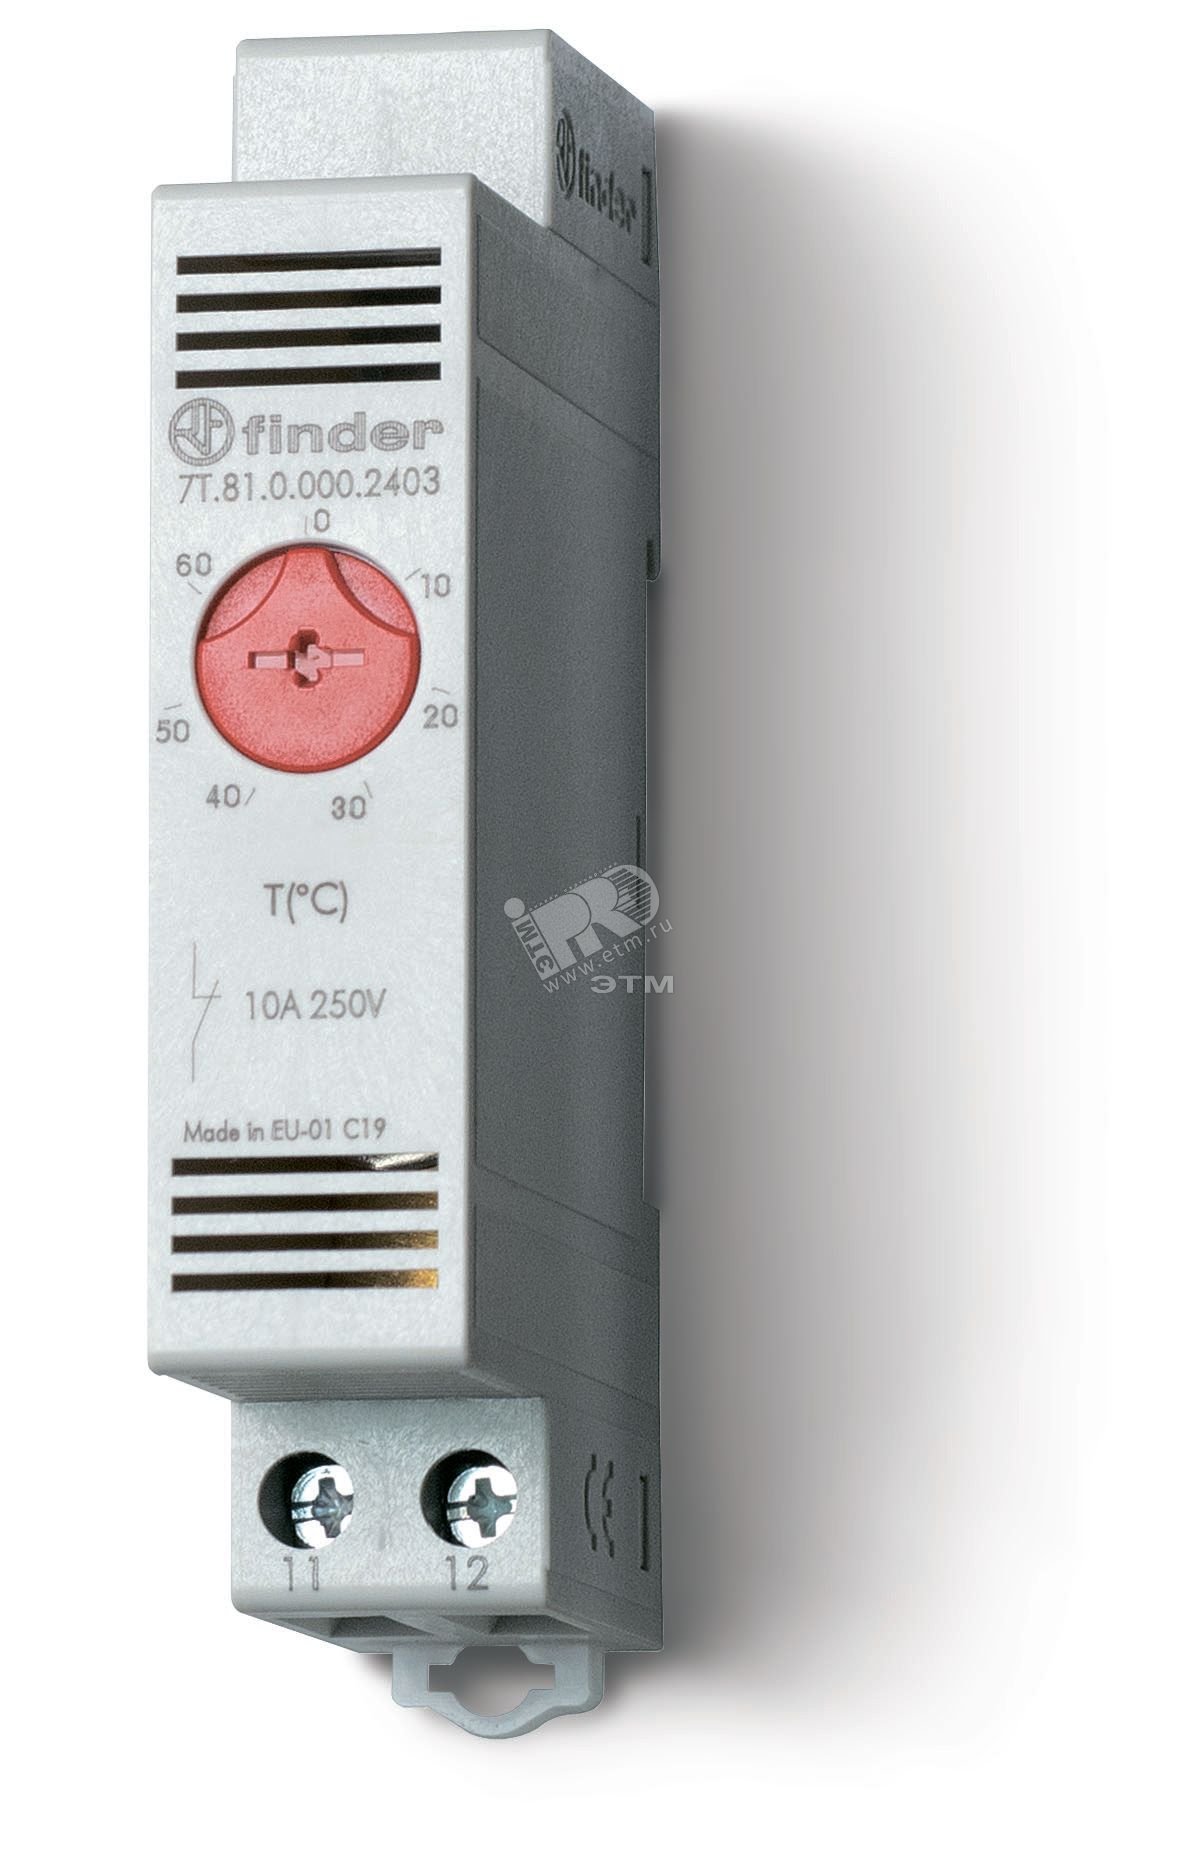 Модульный промышленный термостат NC контакт, диапазон температур (0 … +60) °C, Упаковка с 1 термостатом 7T.81.0.000.2403PAS FINDER